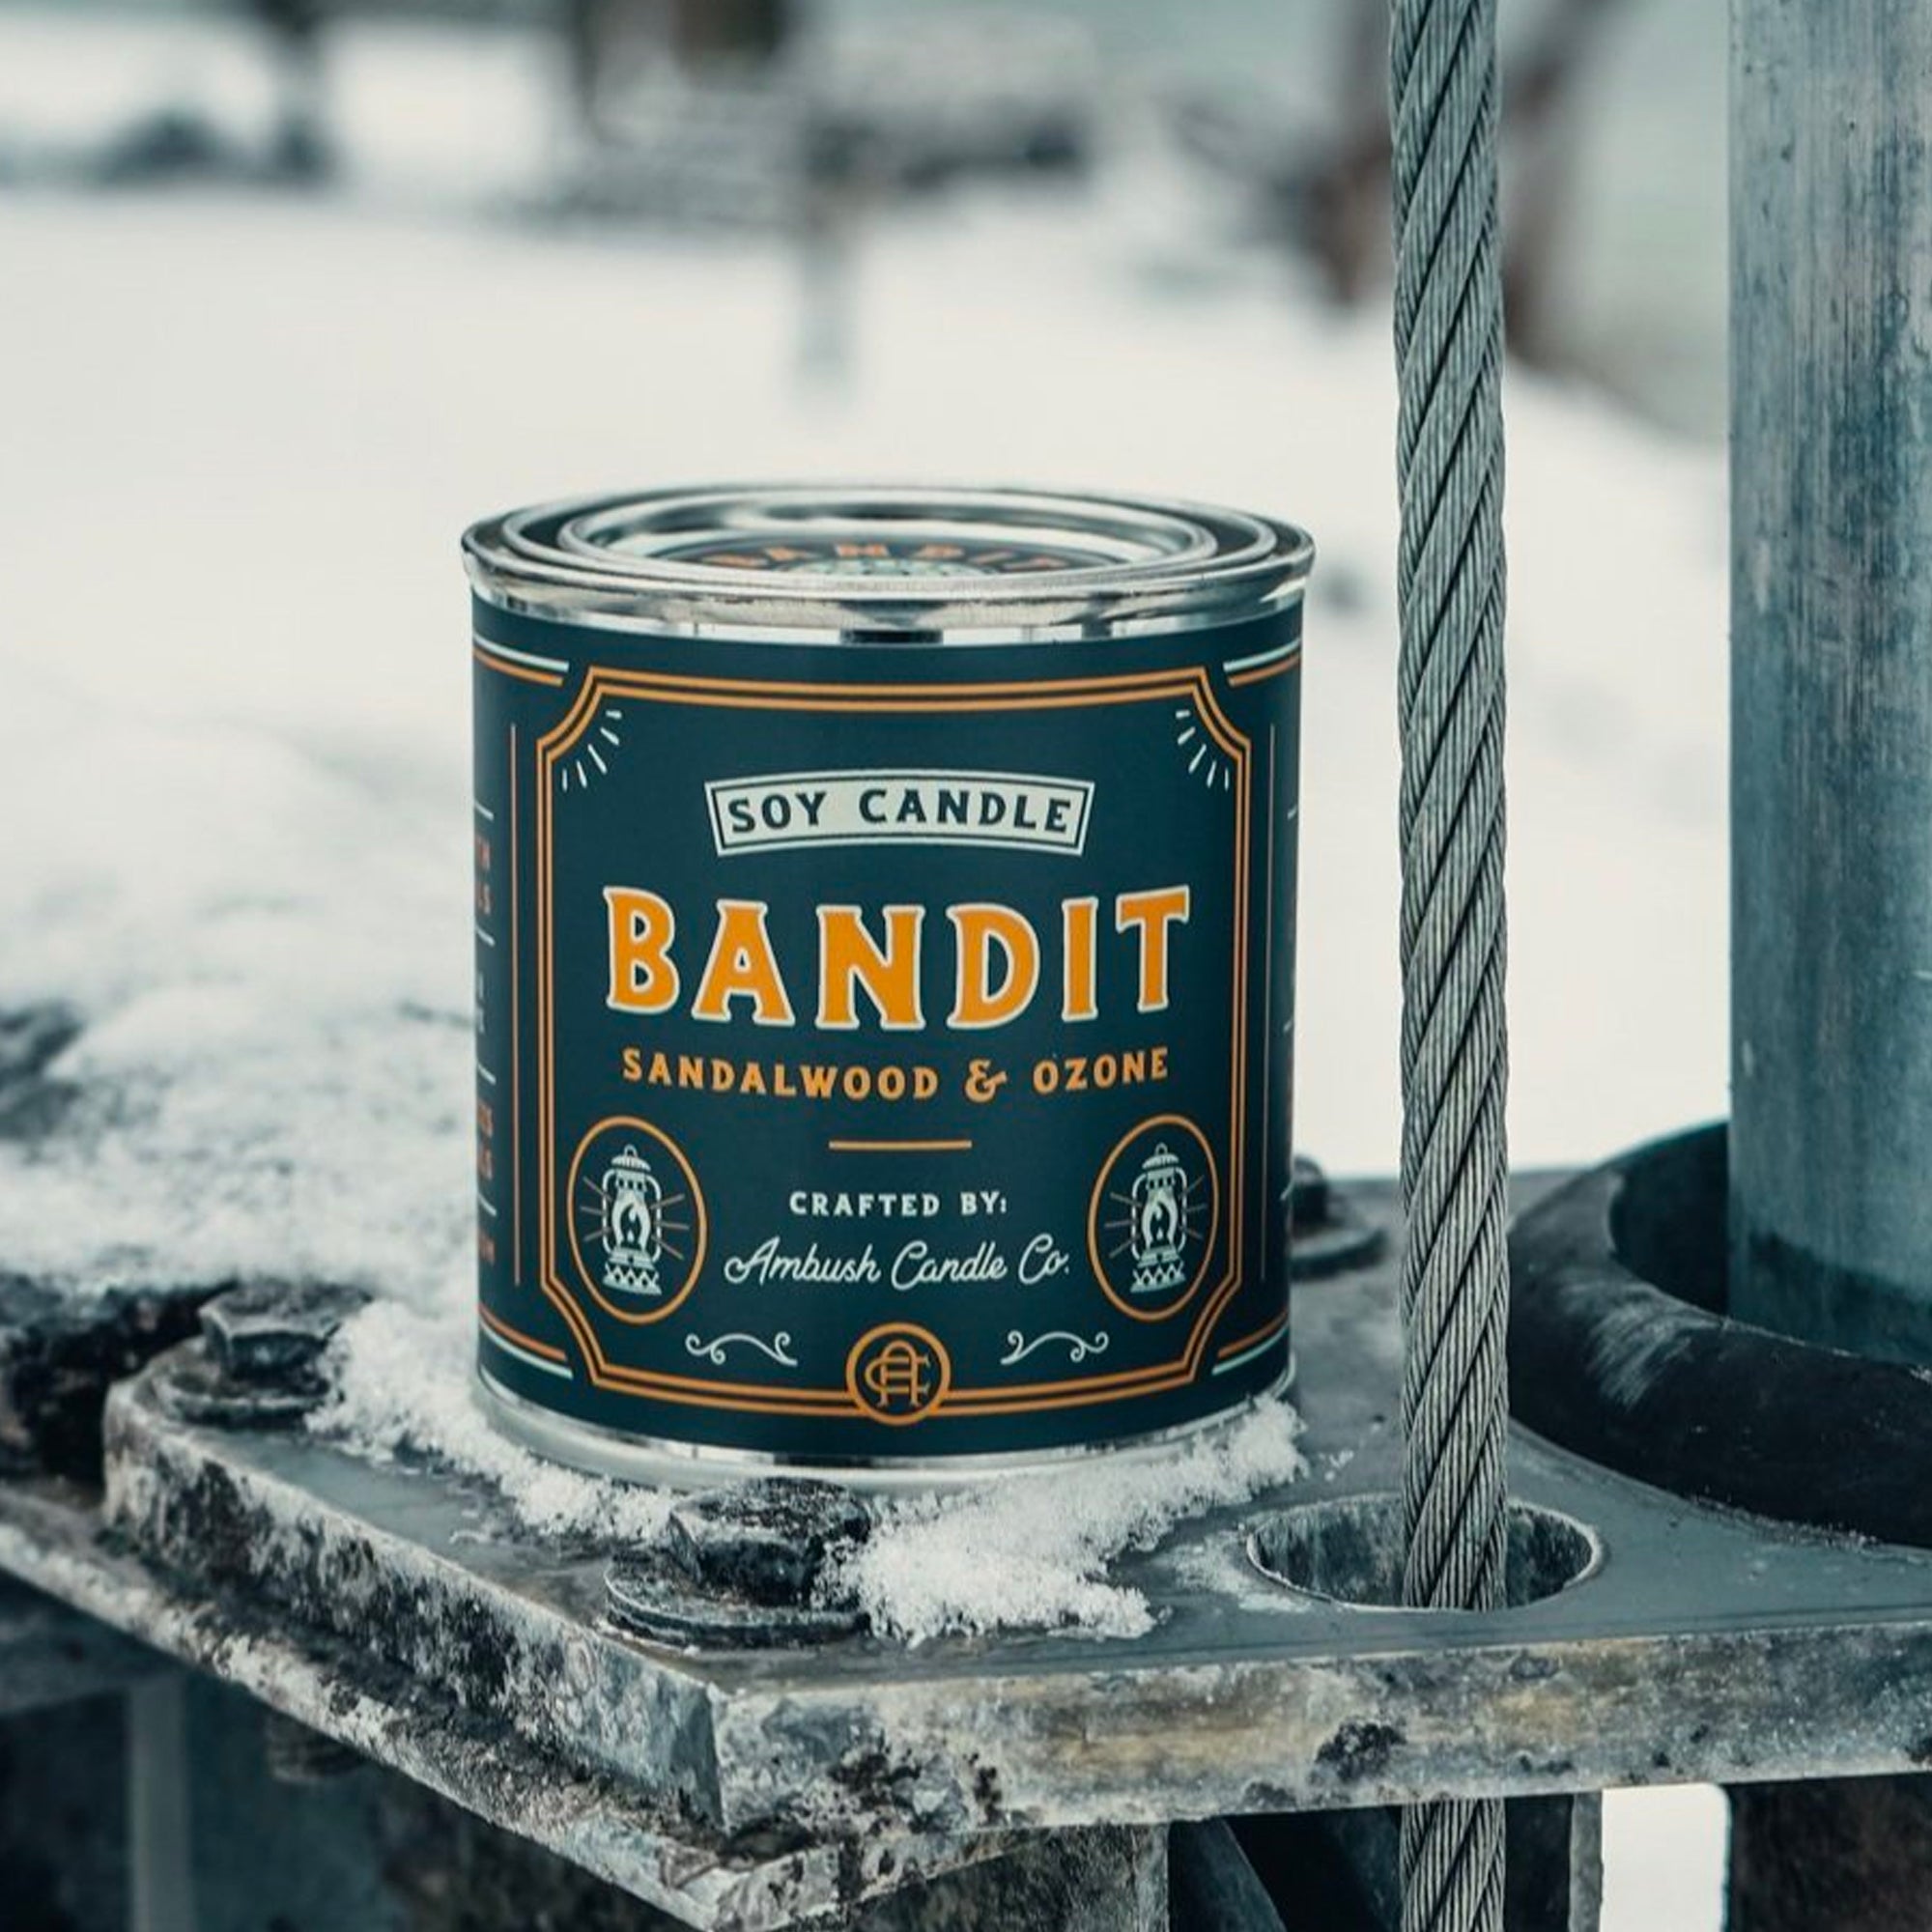 Ambush Candle Co. 8oz 'Bandit' Soy Candle - Sandalwood / Ozone